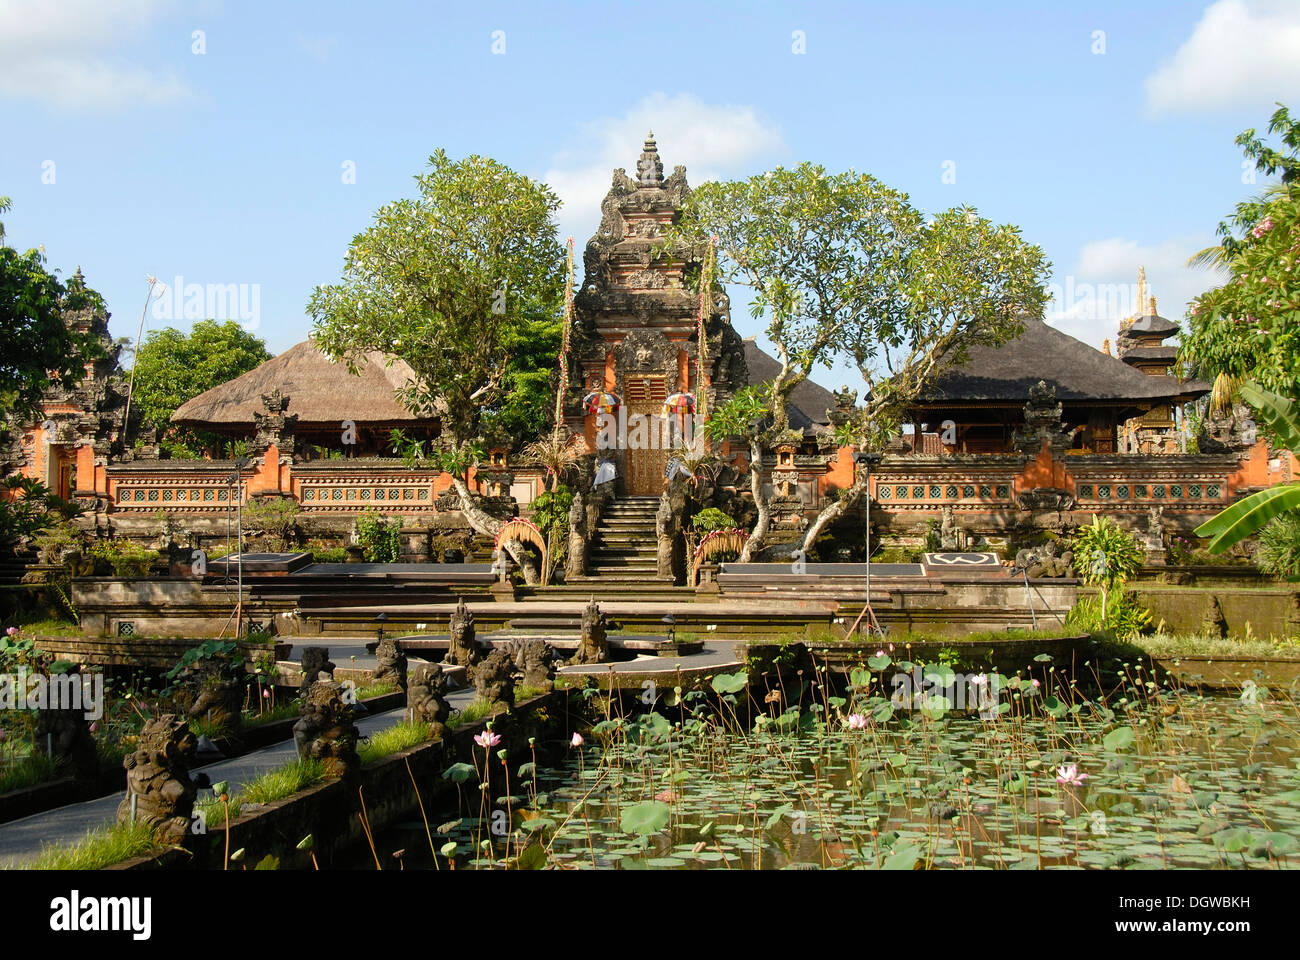 L'hindouisme de Bali, Puri Saren Agung Palace Temple, temple de l'eau à l'étang de lotus, Ubud, Bali, Indonésie, Asie du Sud, Asie Banque D'Images